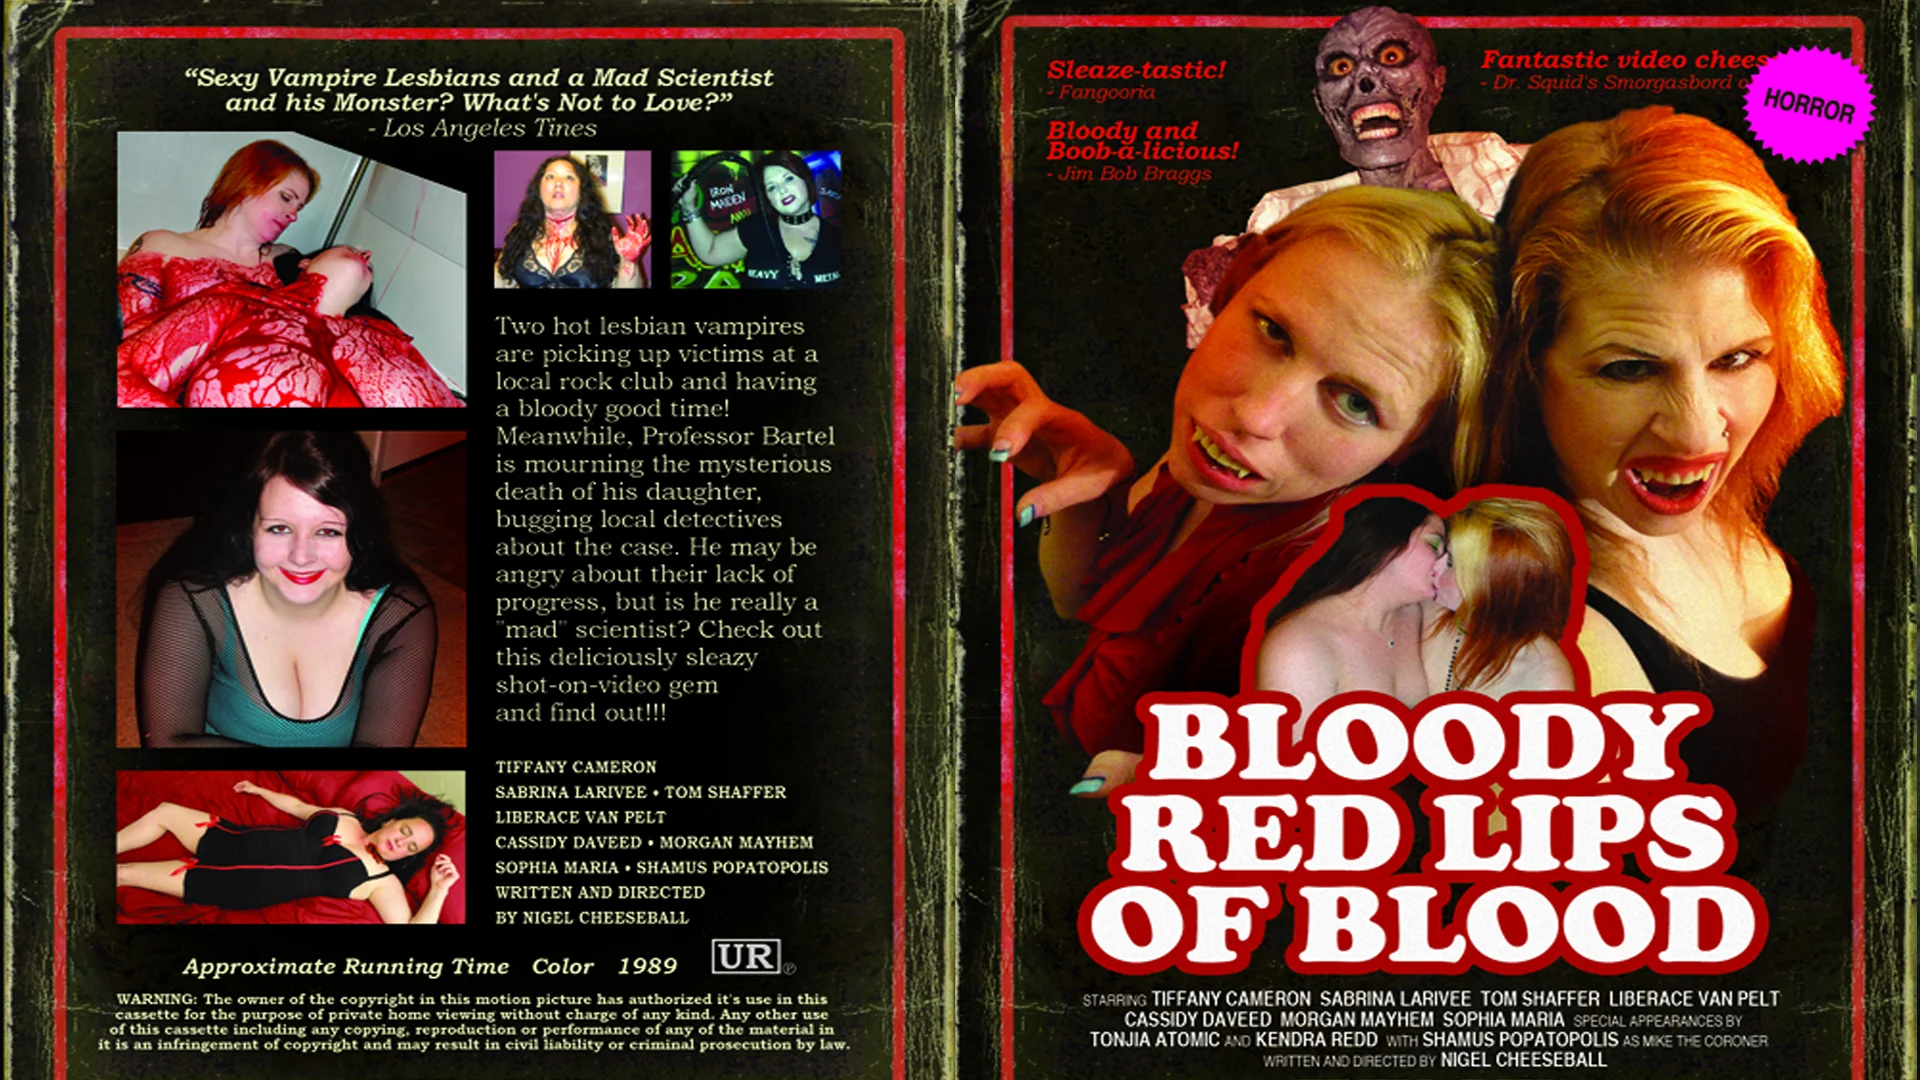 Blood Lad - Episódio 1 - Parte 1/2 (FANDUBLADO) on Vimeo